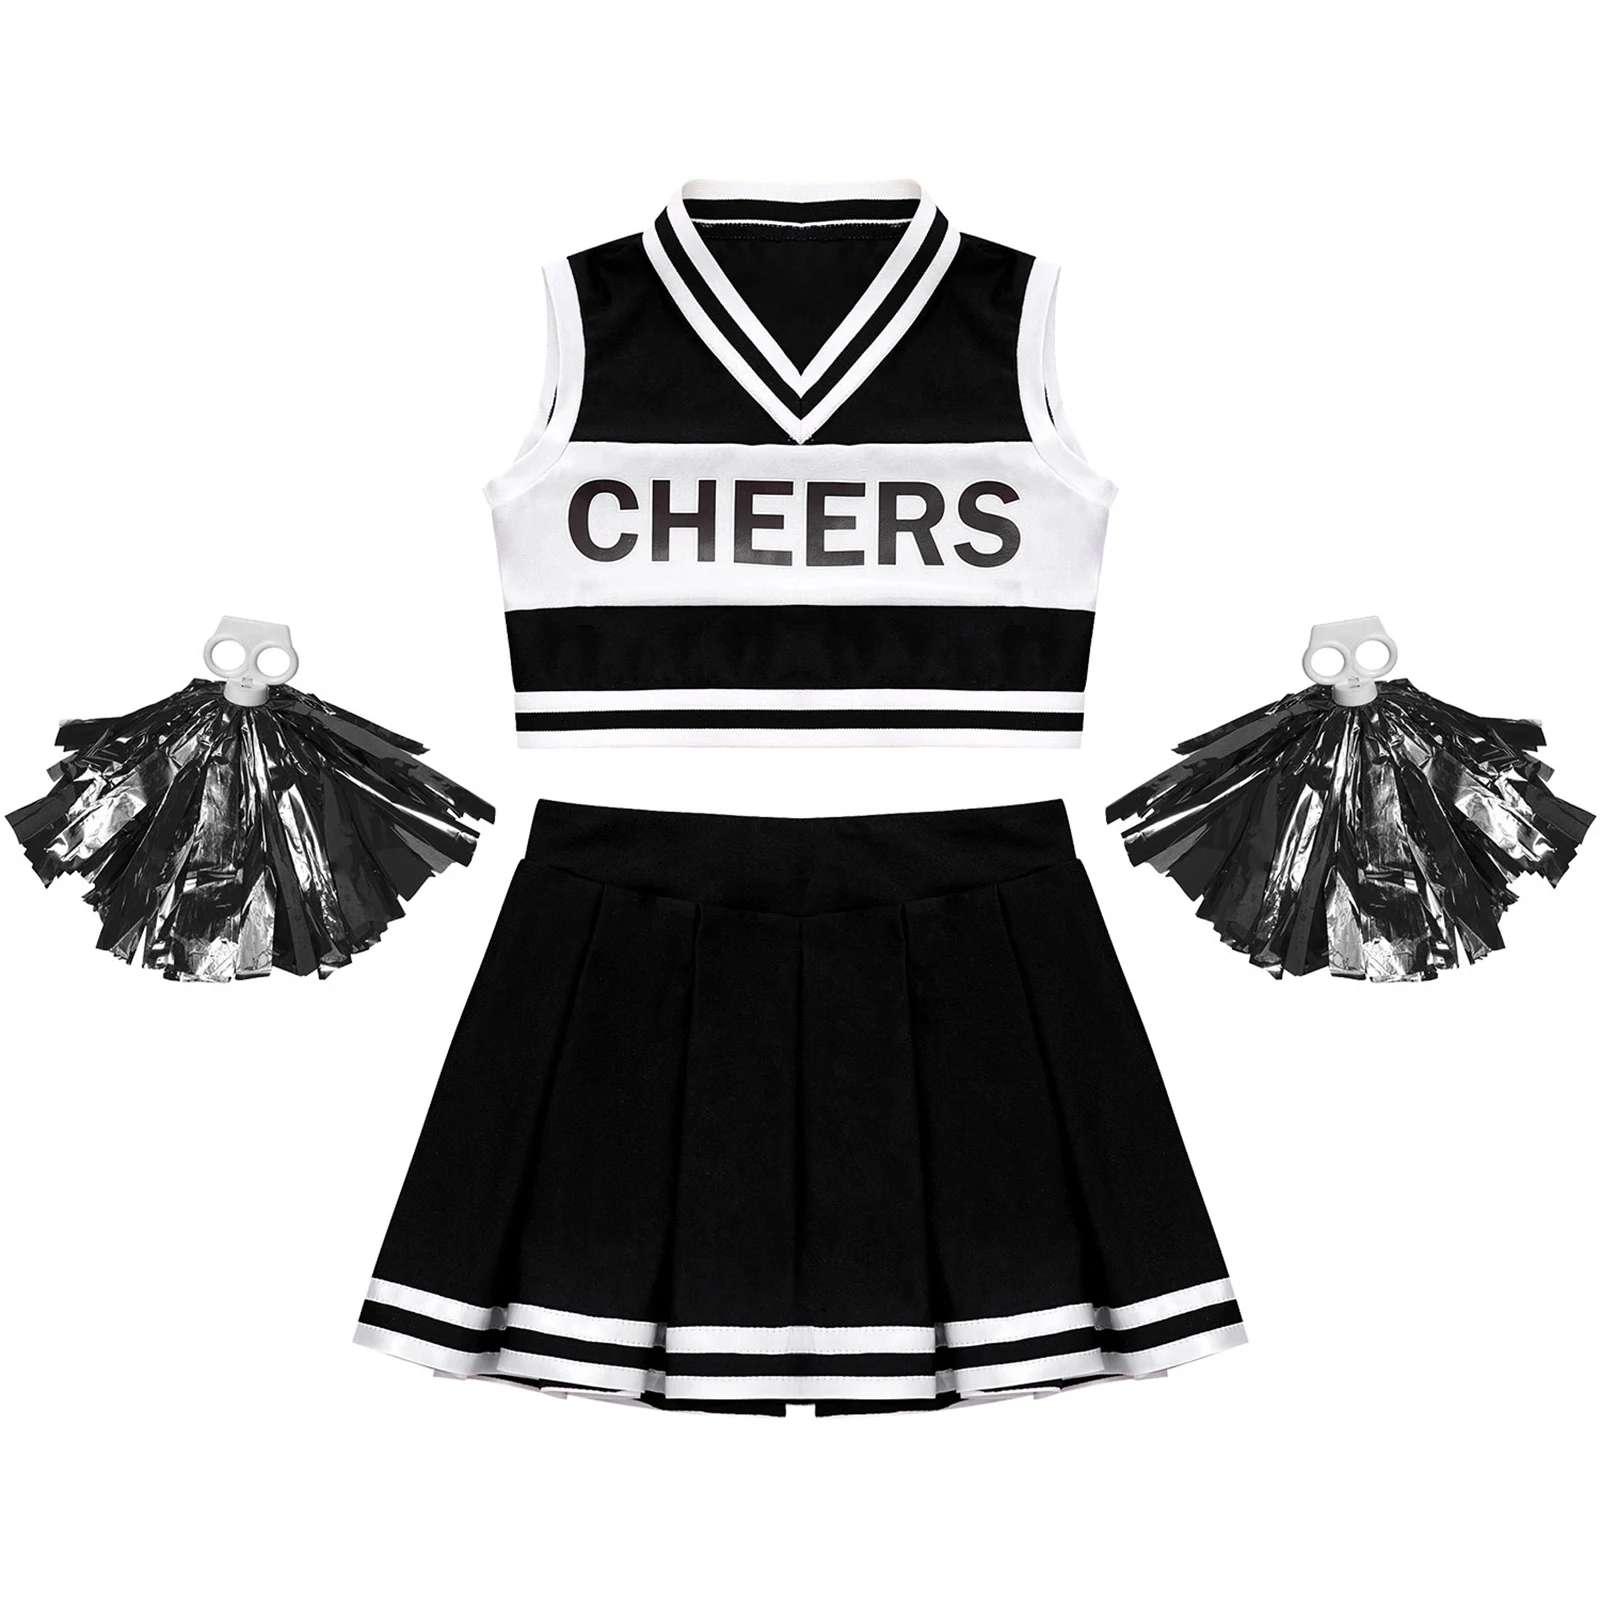 Děti Dívky Cheer Dance Oblečení Roztleskávačky Uniformy Sady pro Taneční Soutěže Dancewear Děti Cosplay Kostým Roztleskávačka